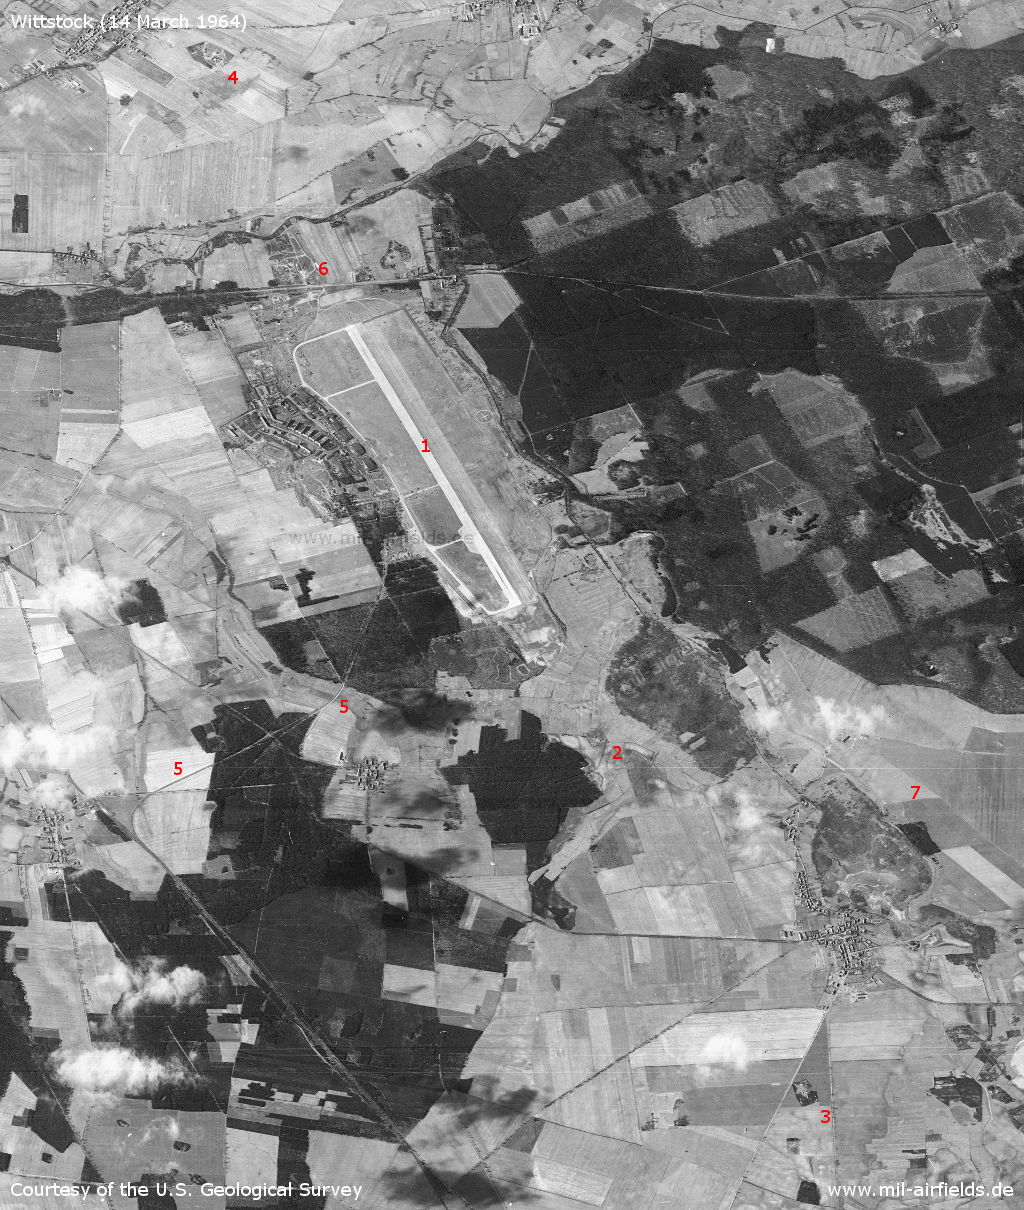 Sowjetischer Flugplatz Wittstock auf einem Satellitenbild 1964